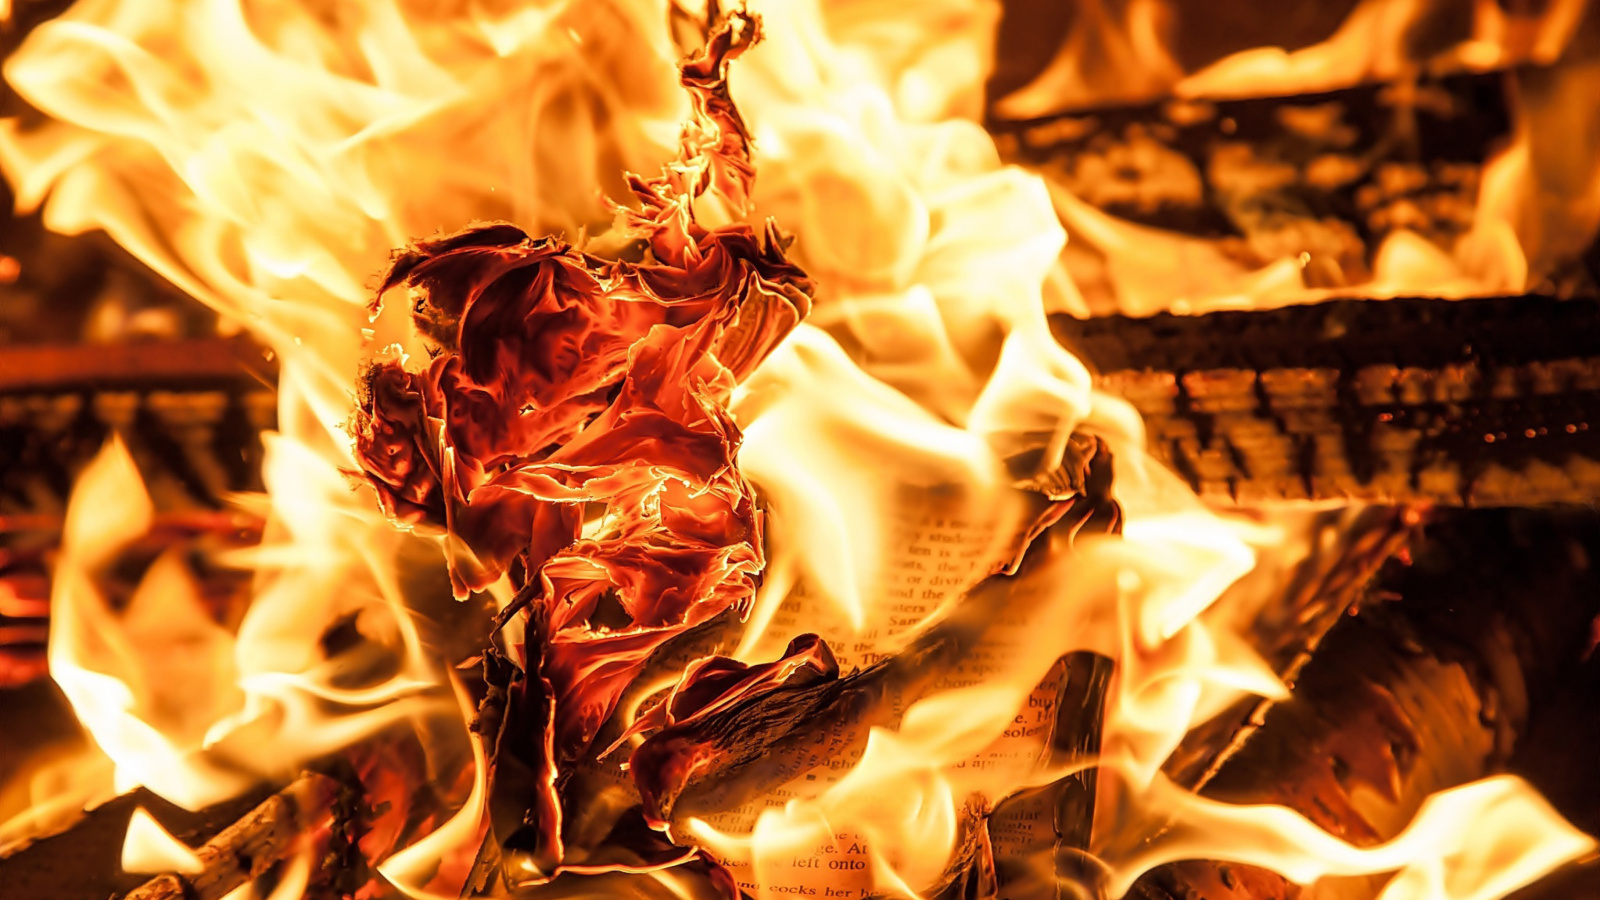 Das Burn and flames Wallpaper 1600x900